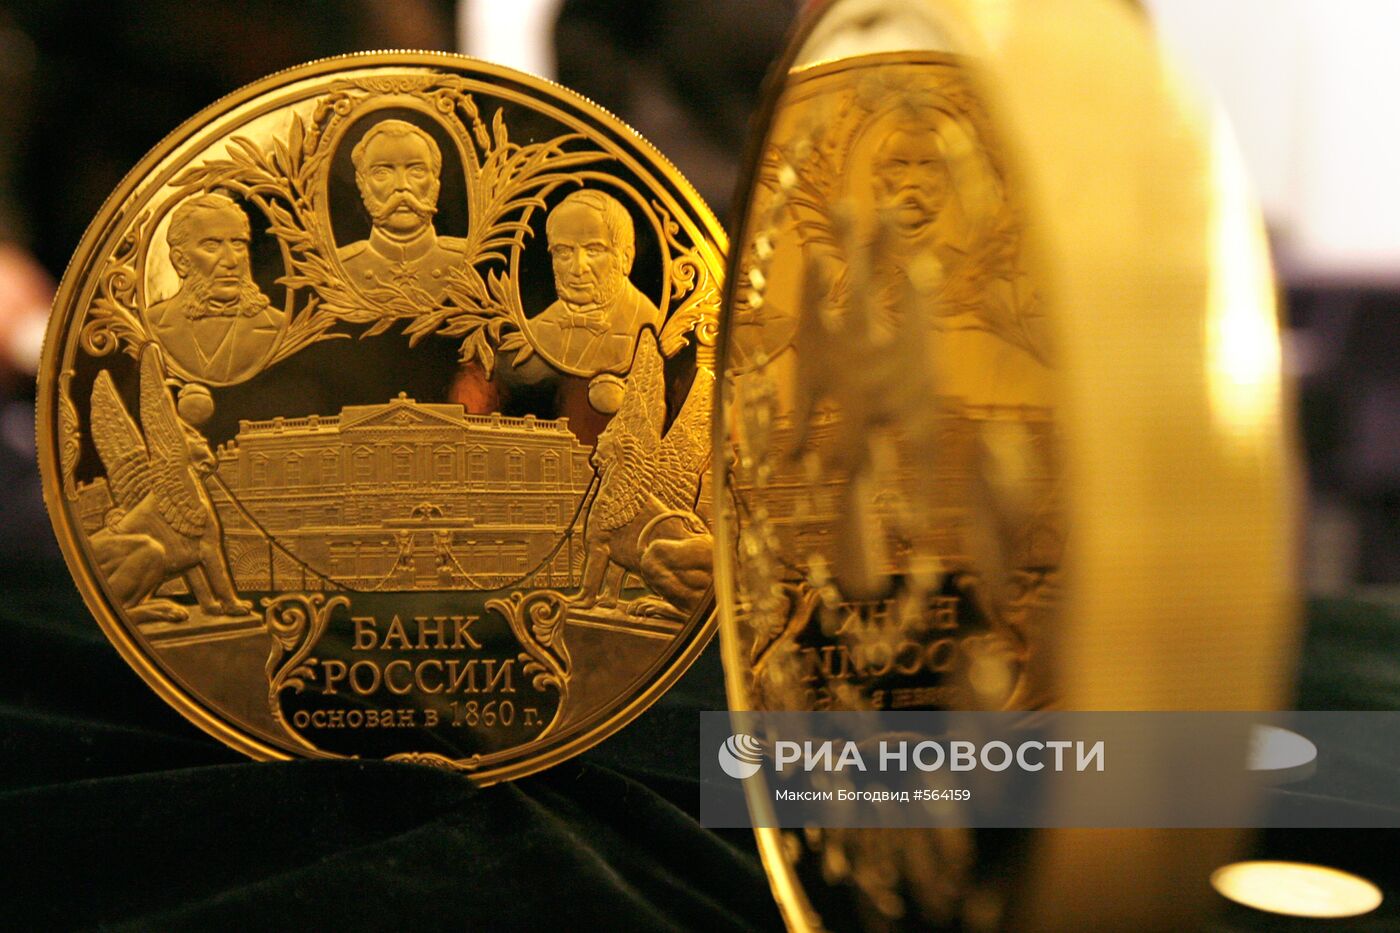 Золотая монета номиналом 50 тысяч рублей